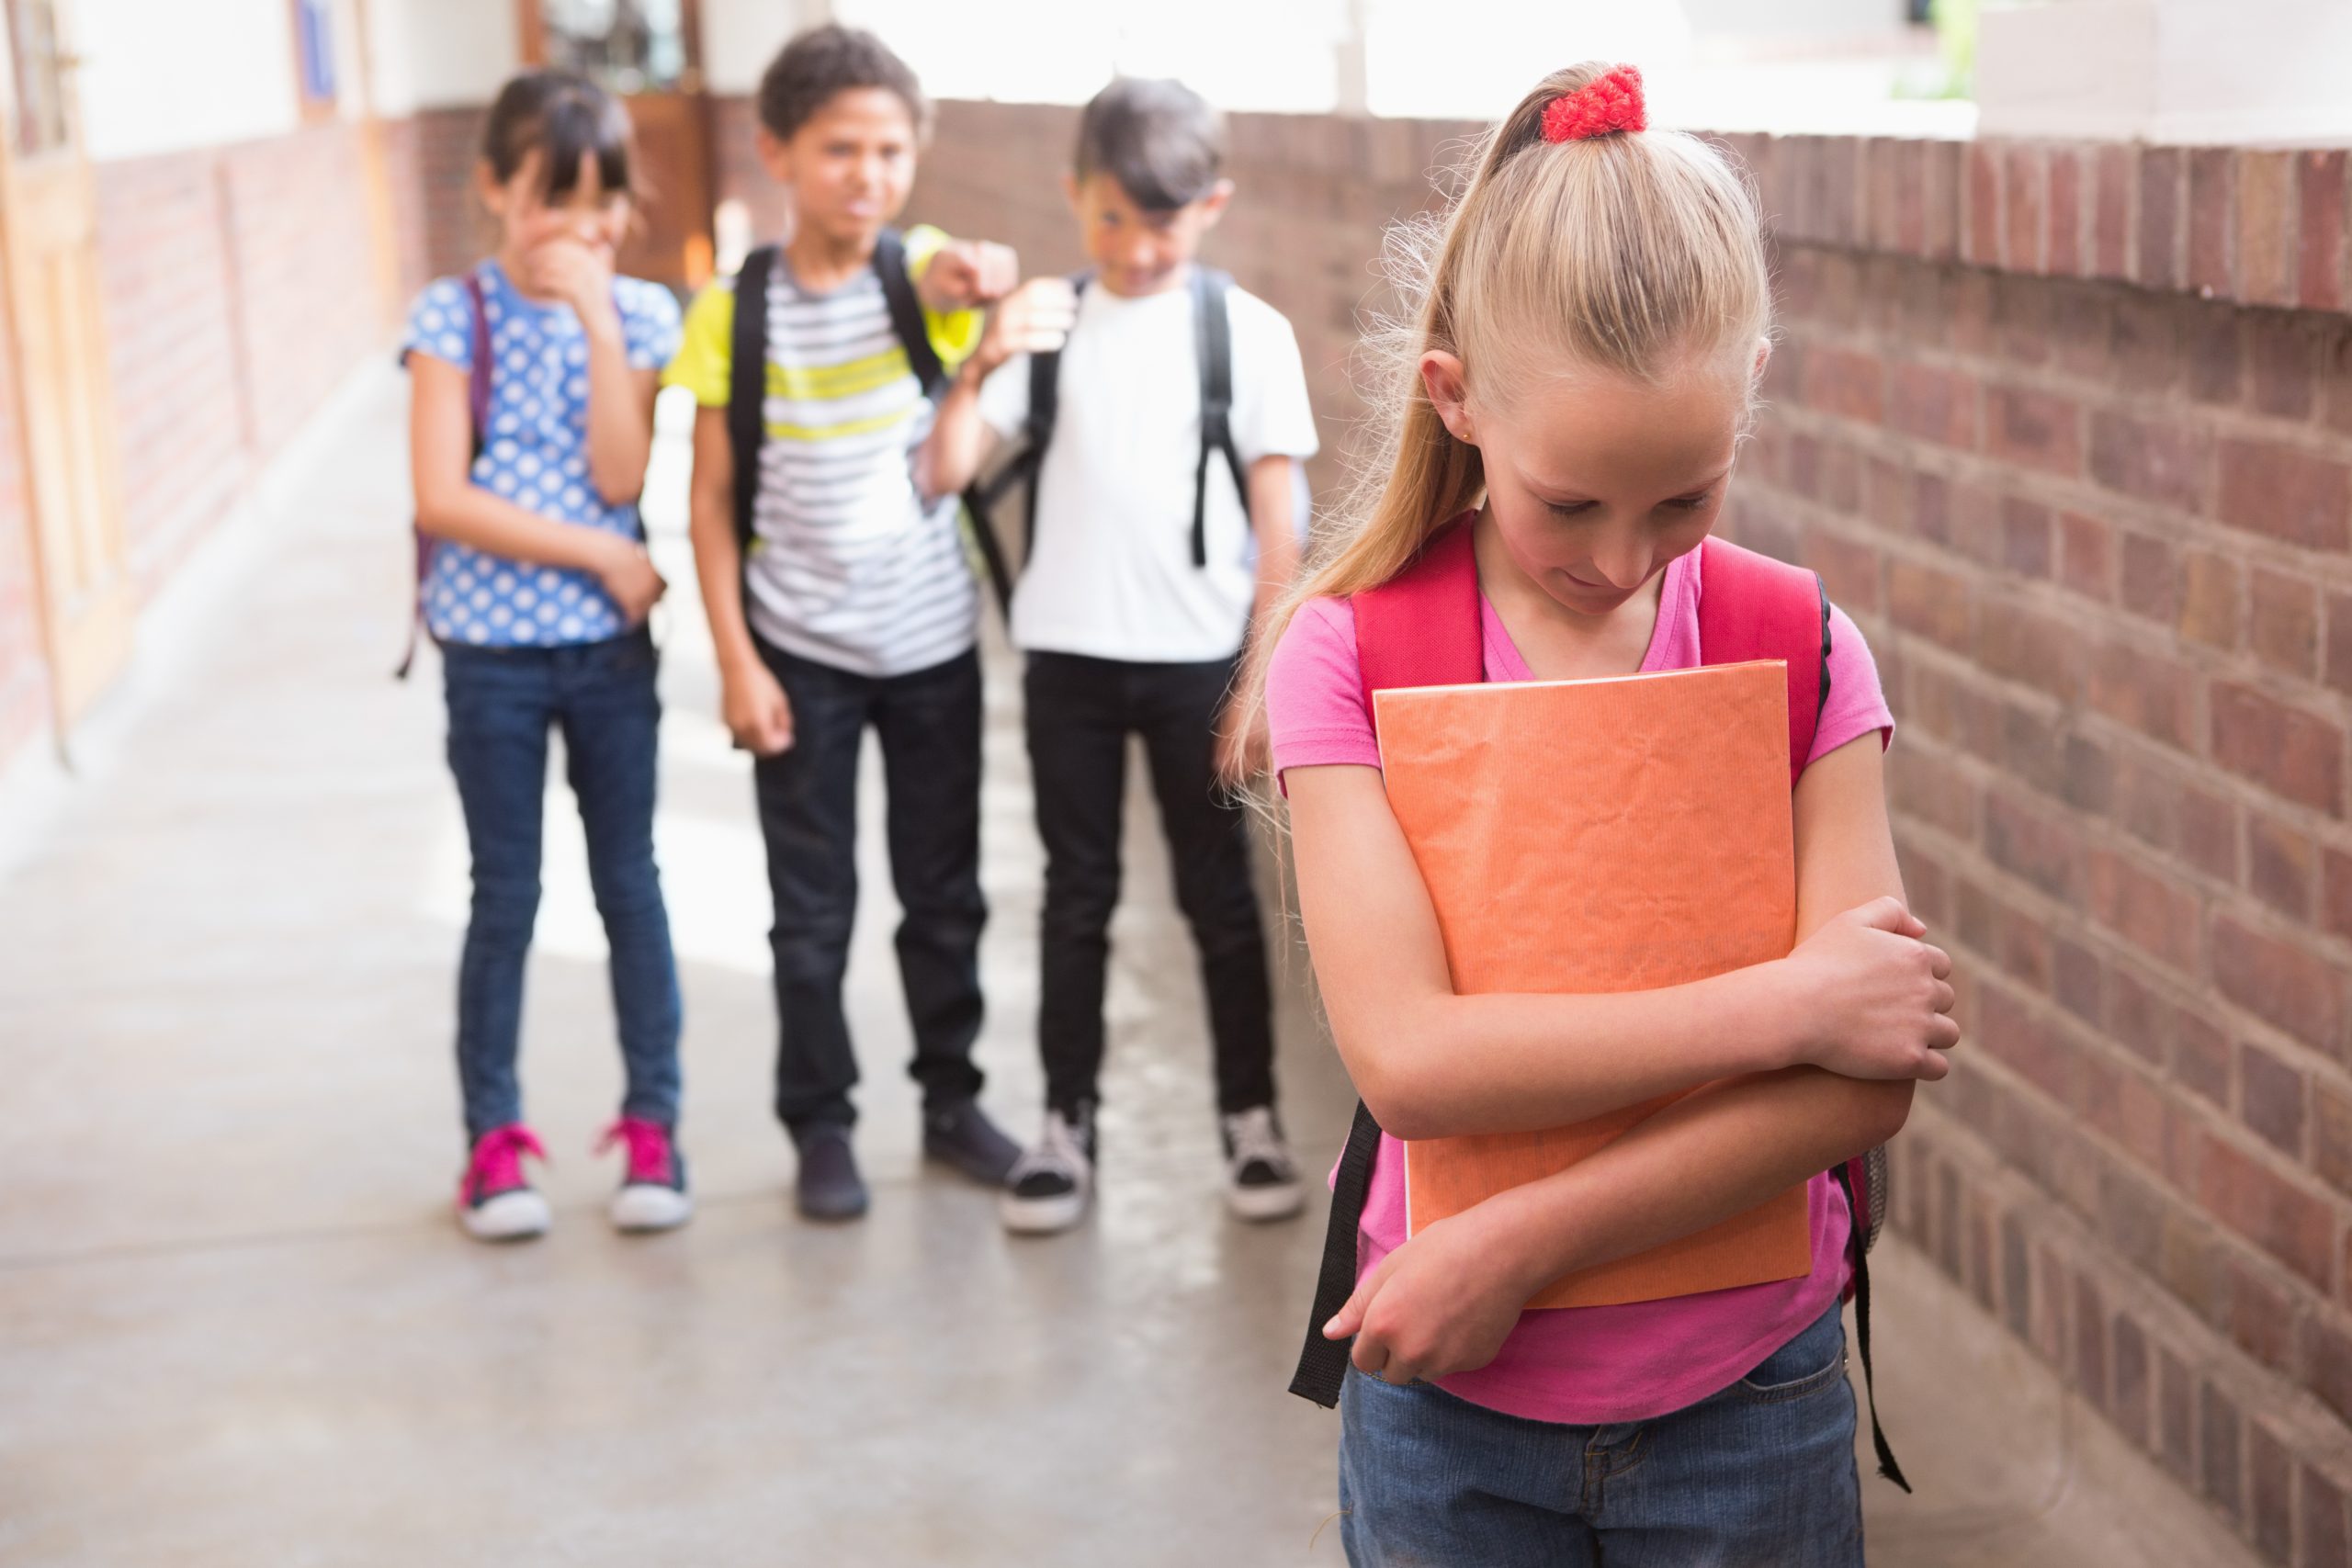 O que faria se visse uma criança a ser vítima de bullying?